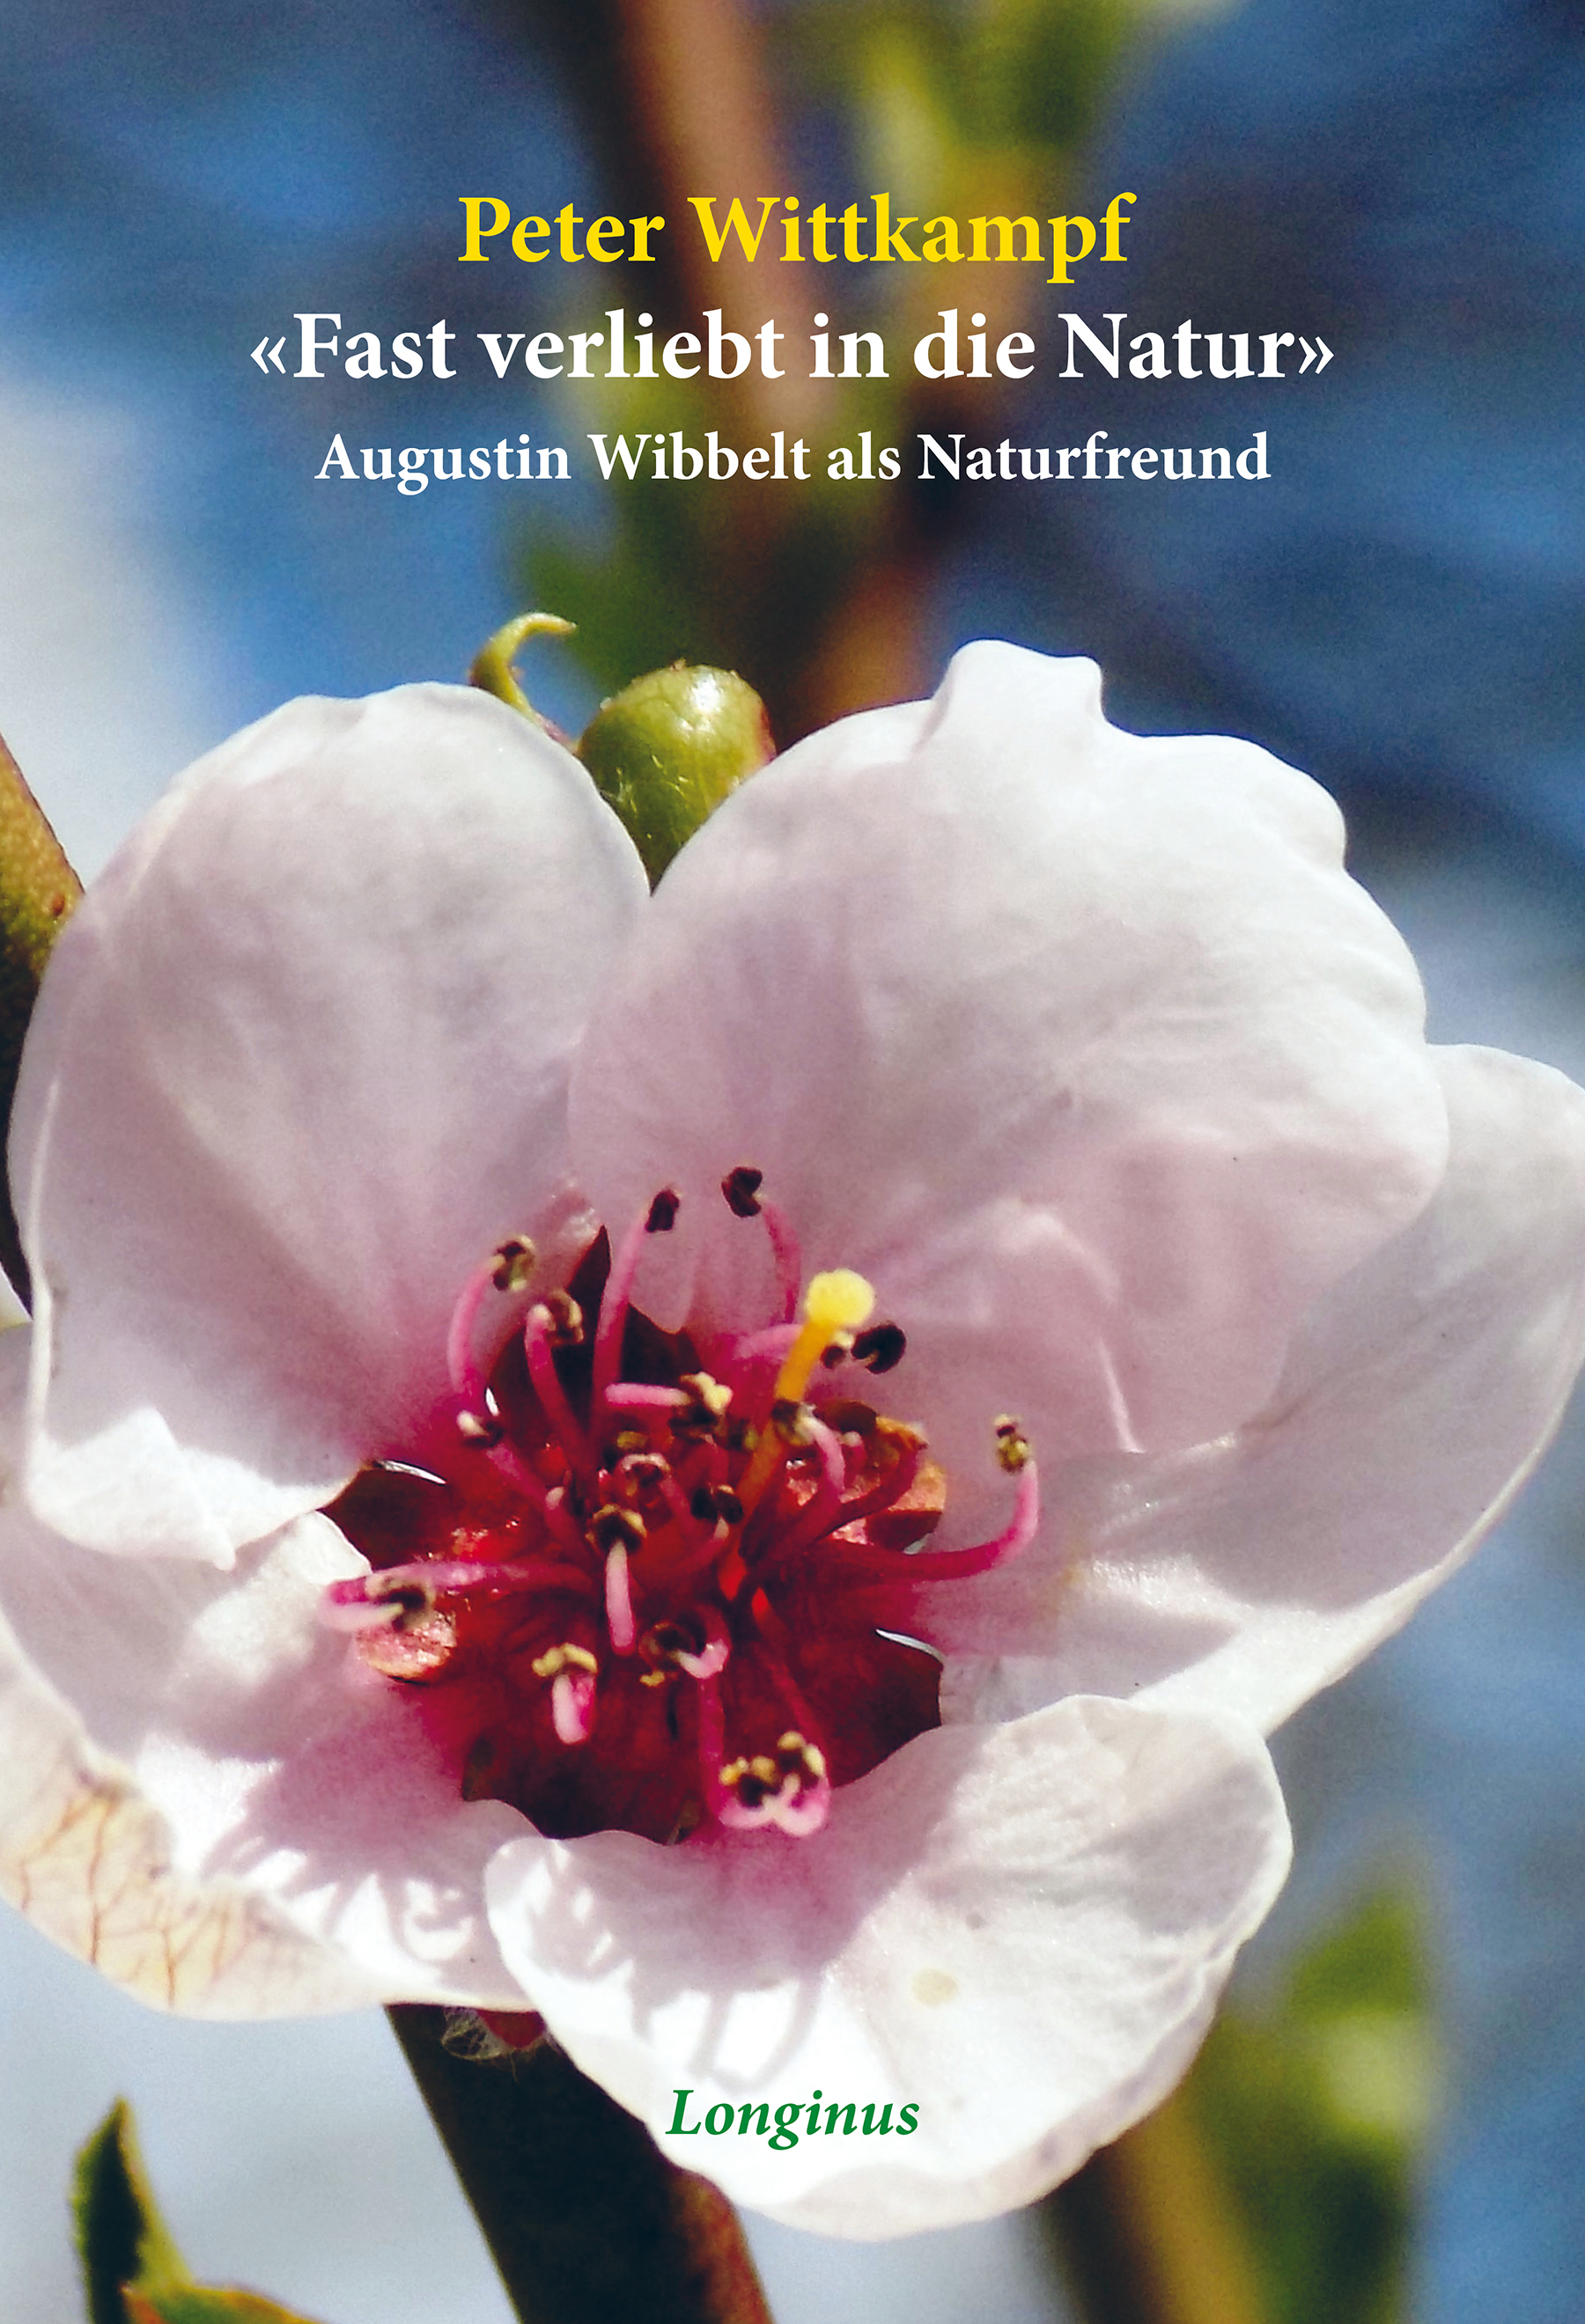 Fast verliebt in die Natur - Augustin Wibbelt als Naturfreund